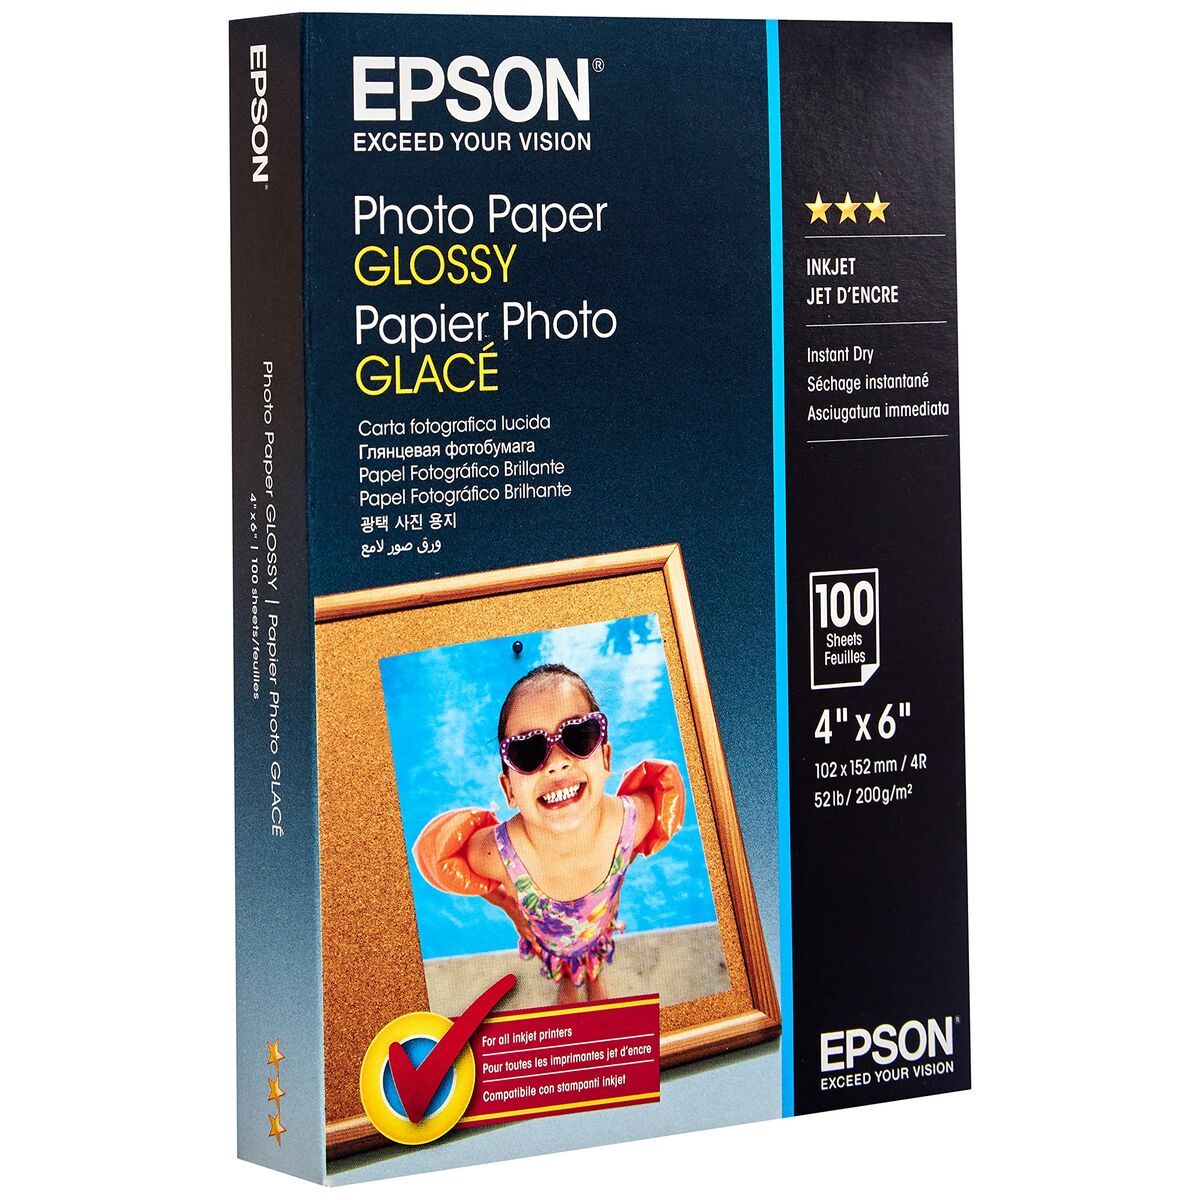 Set aus Epson-Tinte und Fotopapier C13S042548